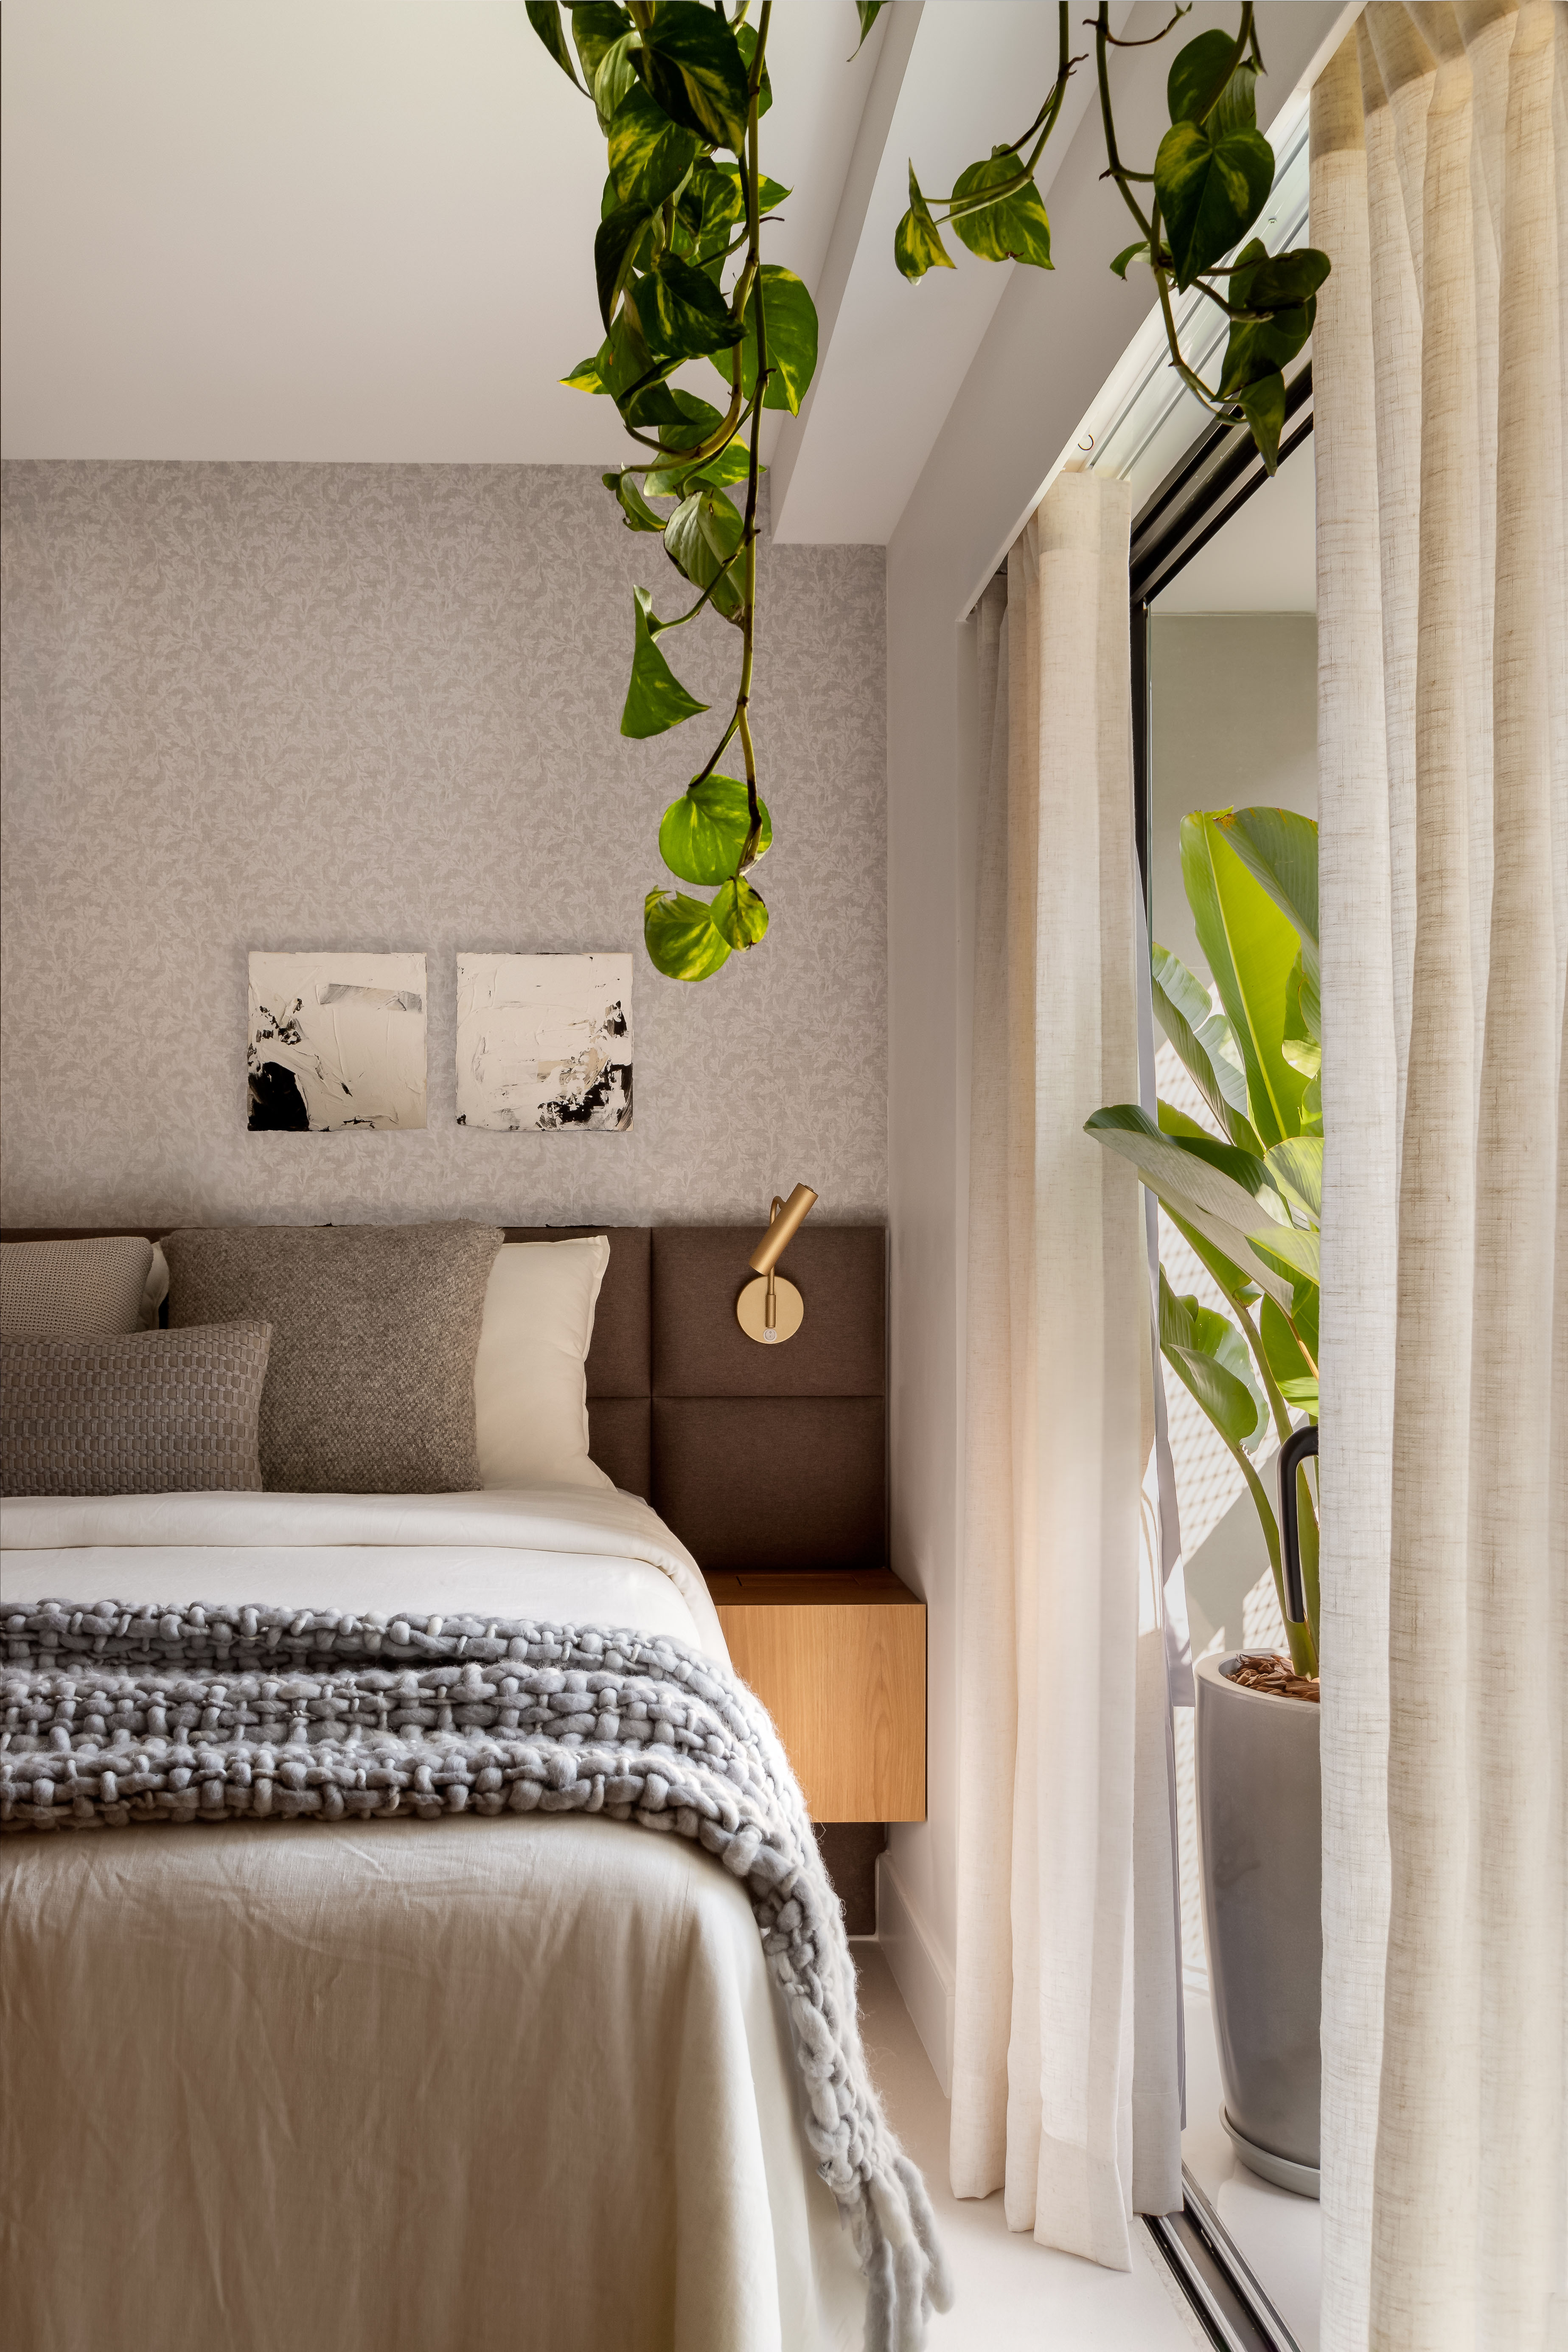 Reforma em apê de 73 m² cria mini lavabo com paredes de drywall. Projeto de Casa Tauari. Na foto, quarto, cabeceira estofada marrom, planta suspensa.